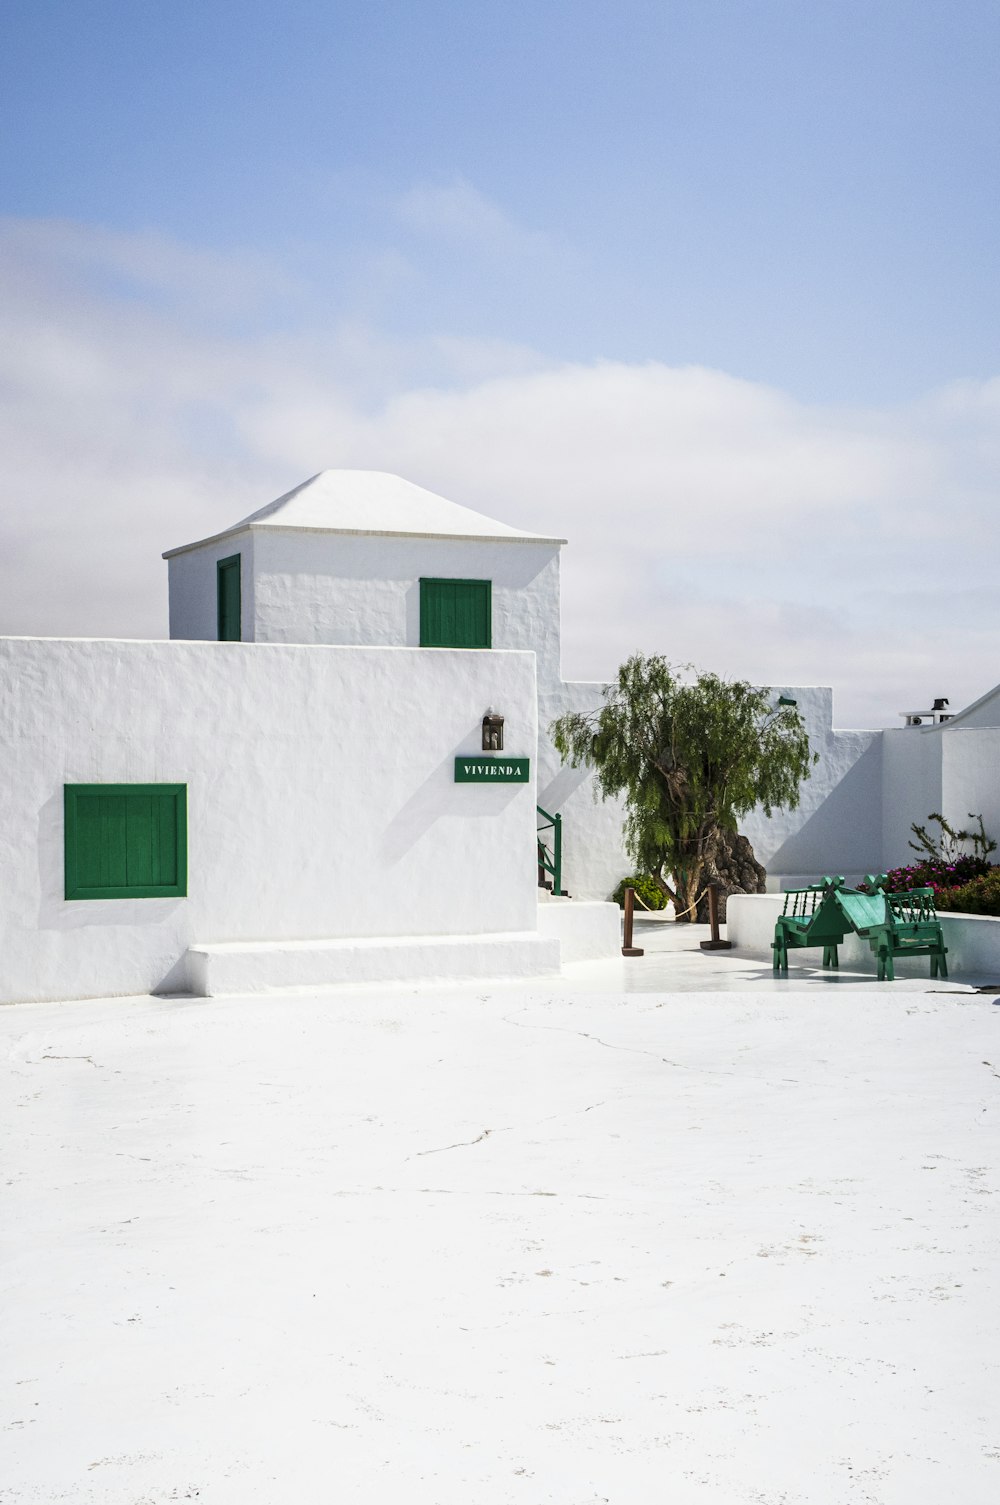 녹색 문이있는 흰색 건물